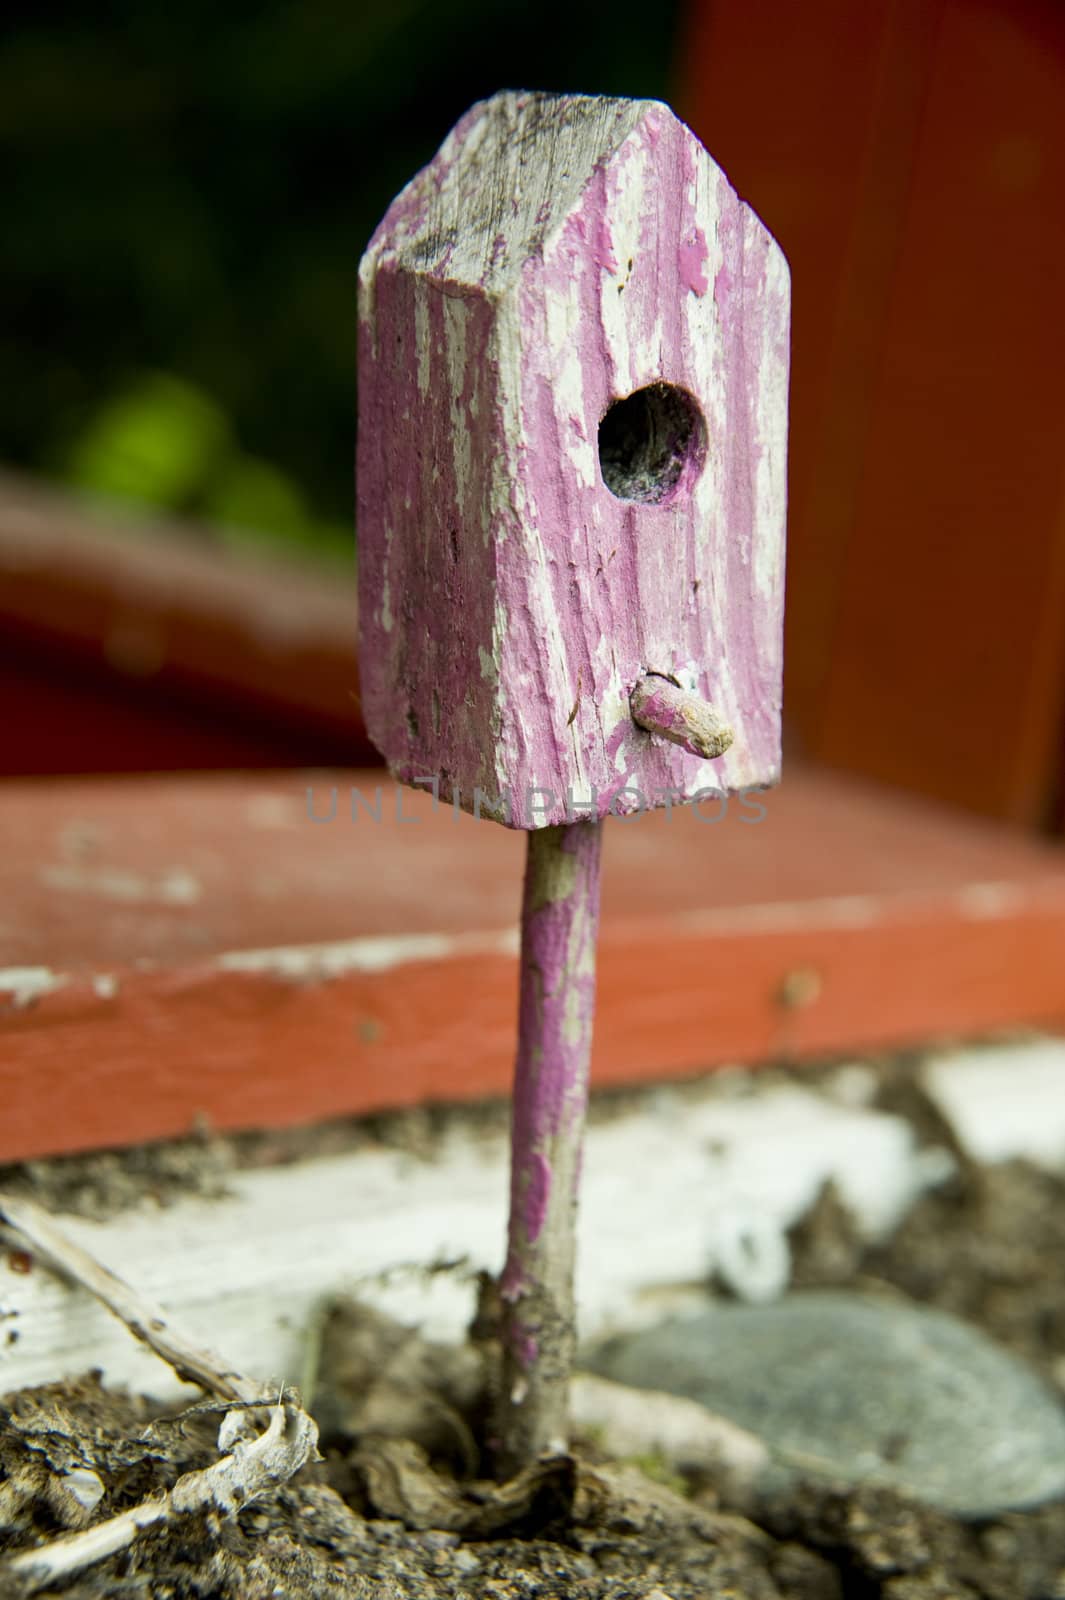 Small house for birds as garden decoraition